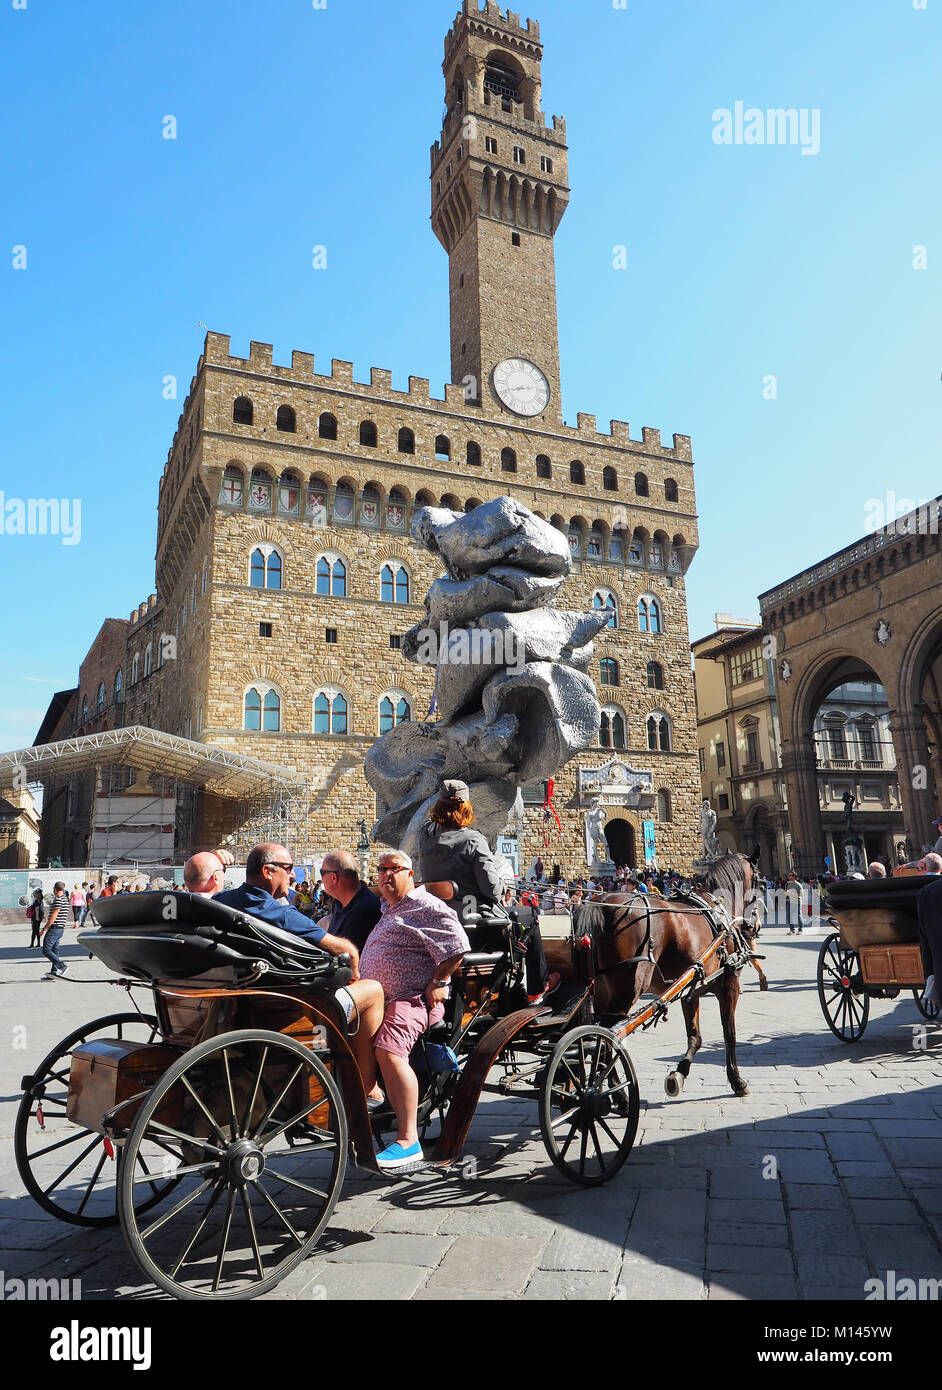 Caballo carriagein turística ciudad vieja, Palazzo Vecchio, Florencia Toscana Italia Europa central, Foto de stock